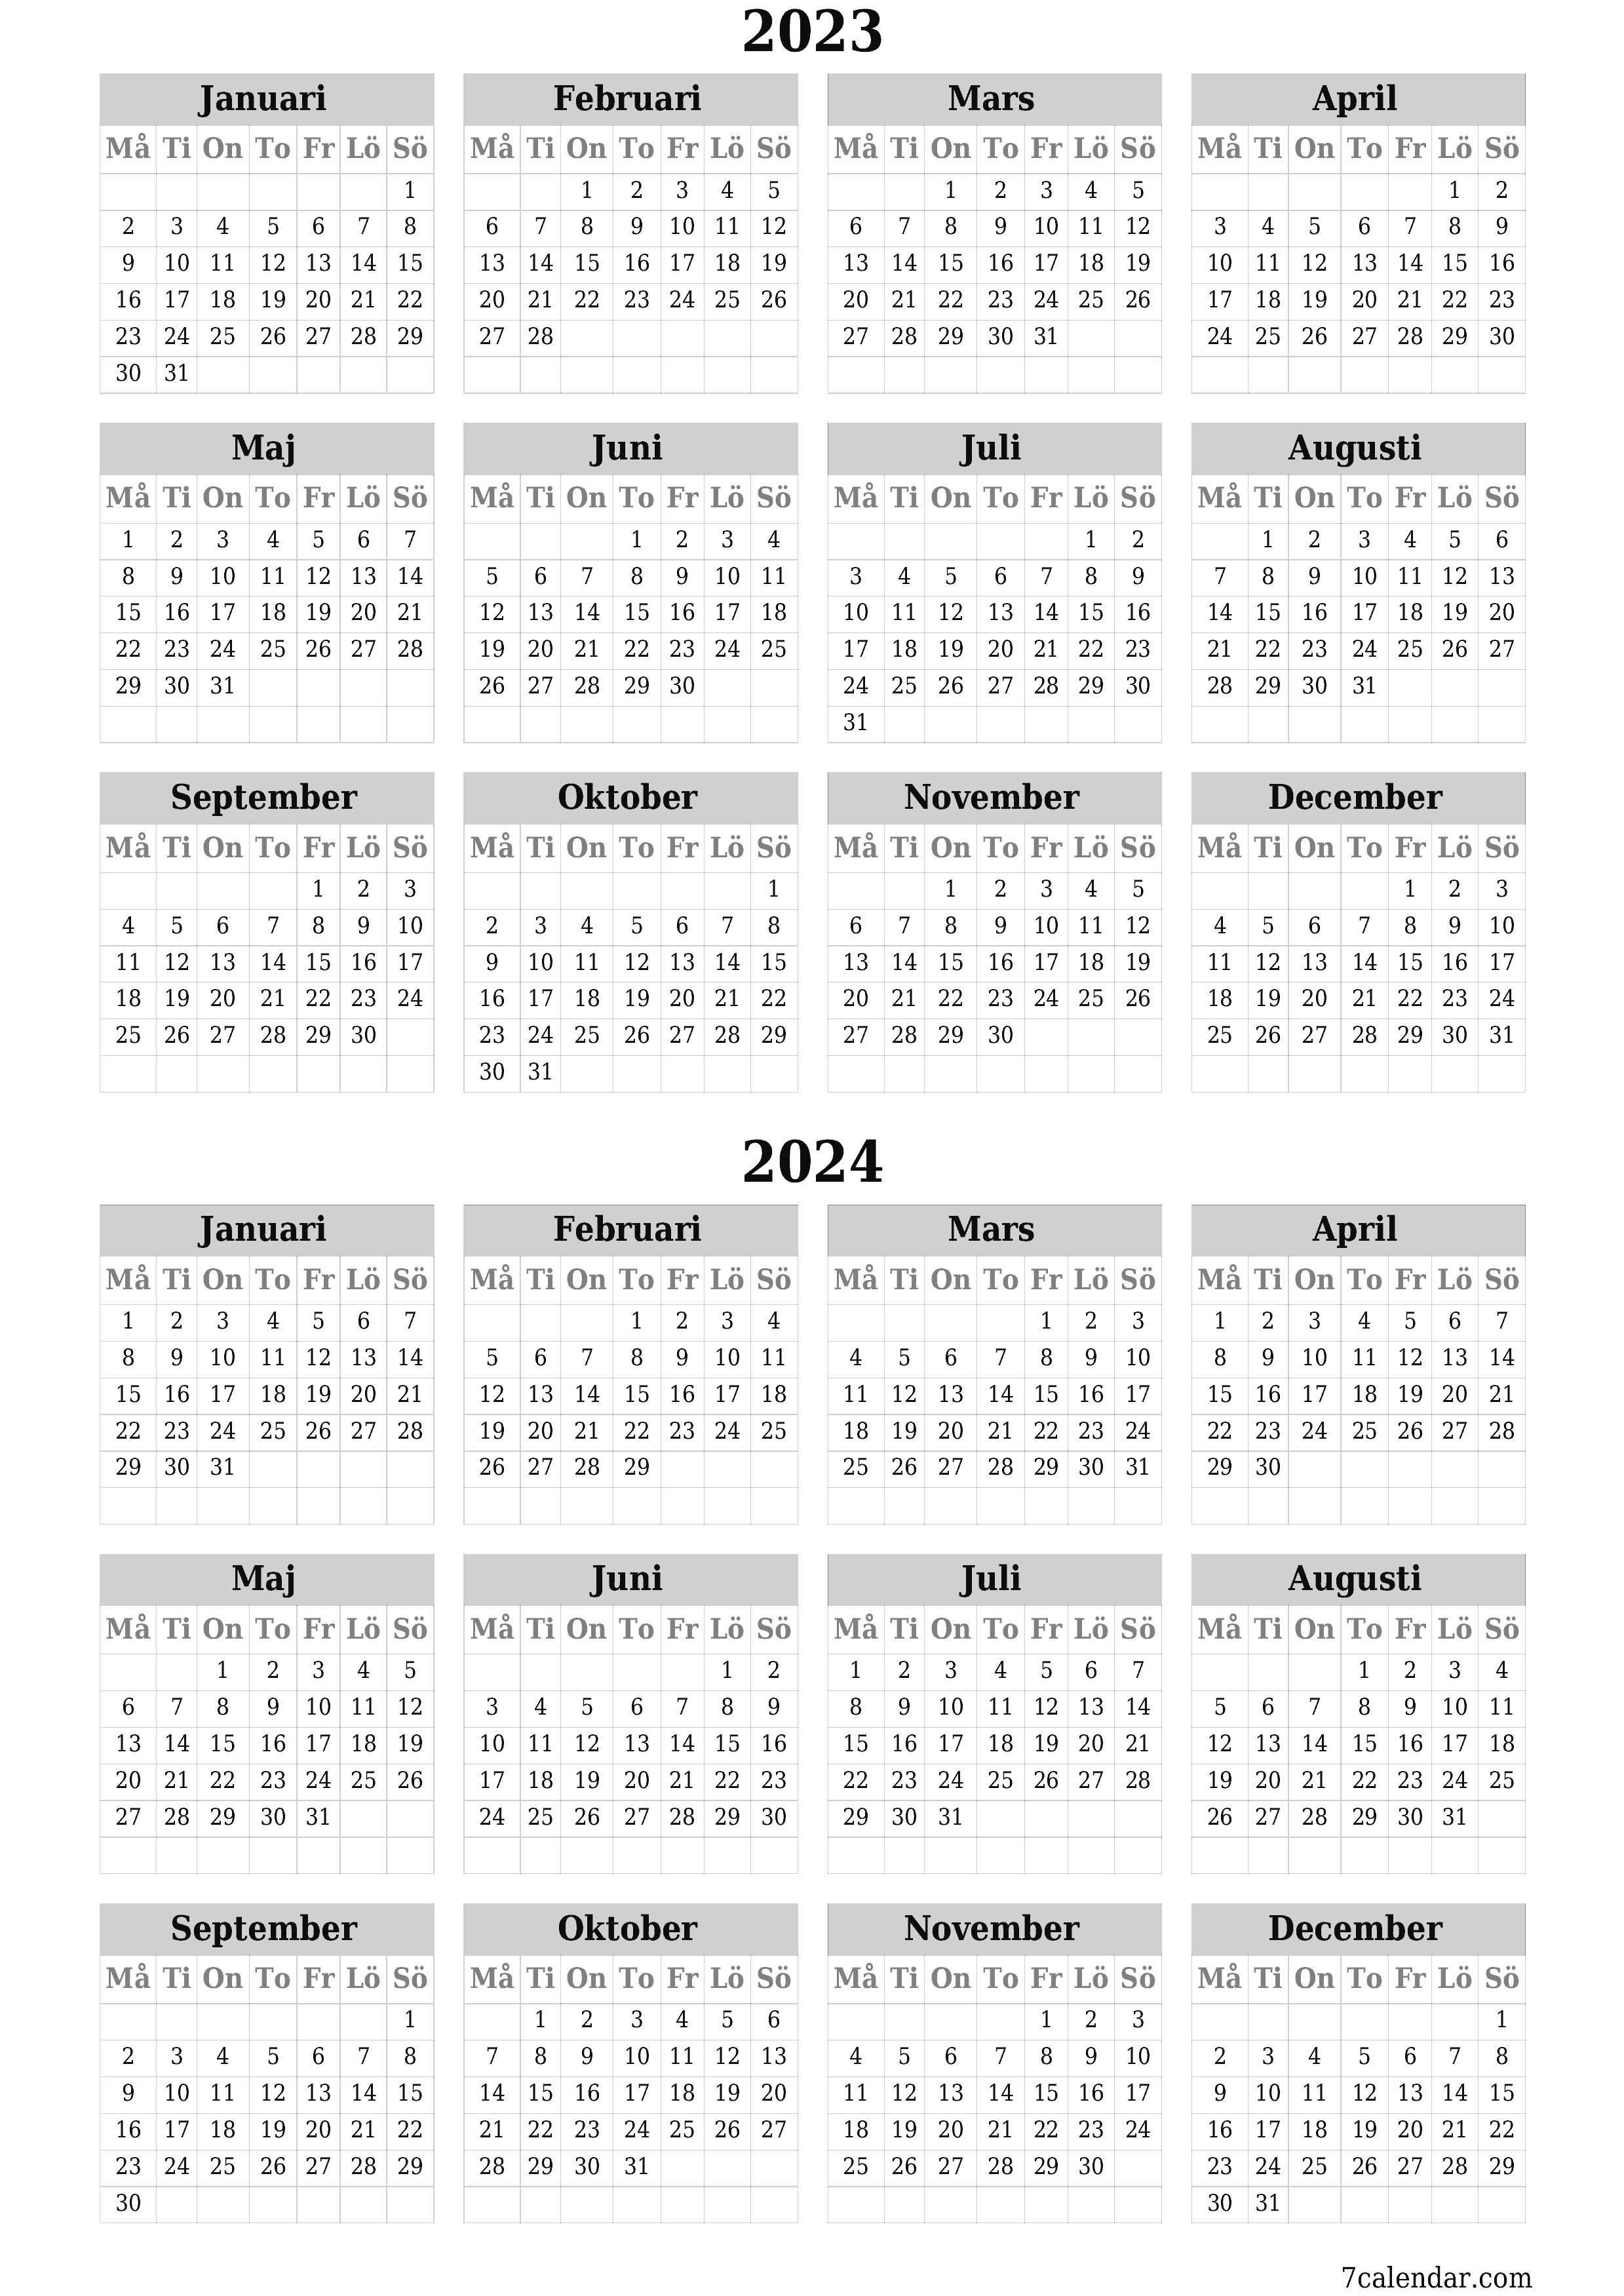 Tom årlig planeringskalender för året 2023, 2024 med anteckningar, spara och skriv ut till PDF PNG Swedish - 7calendar.com